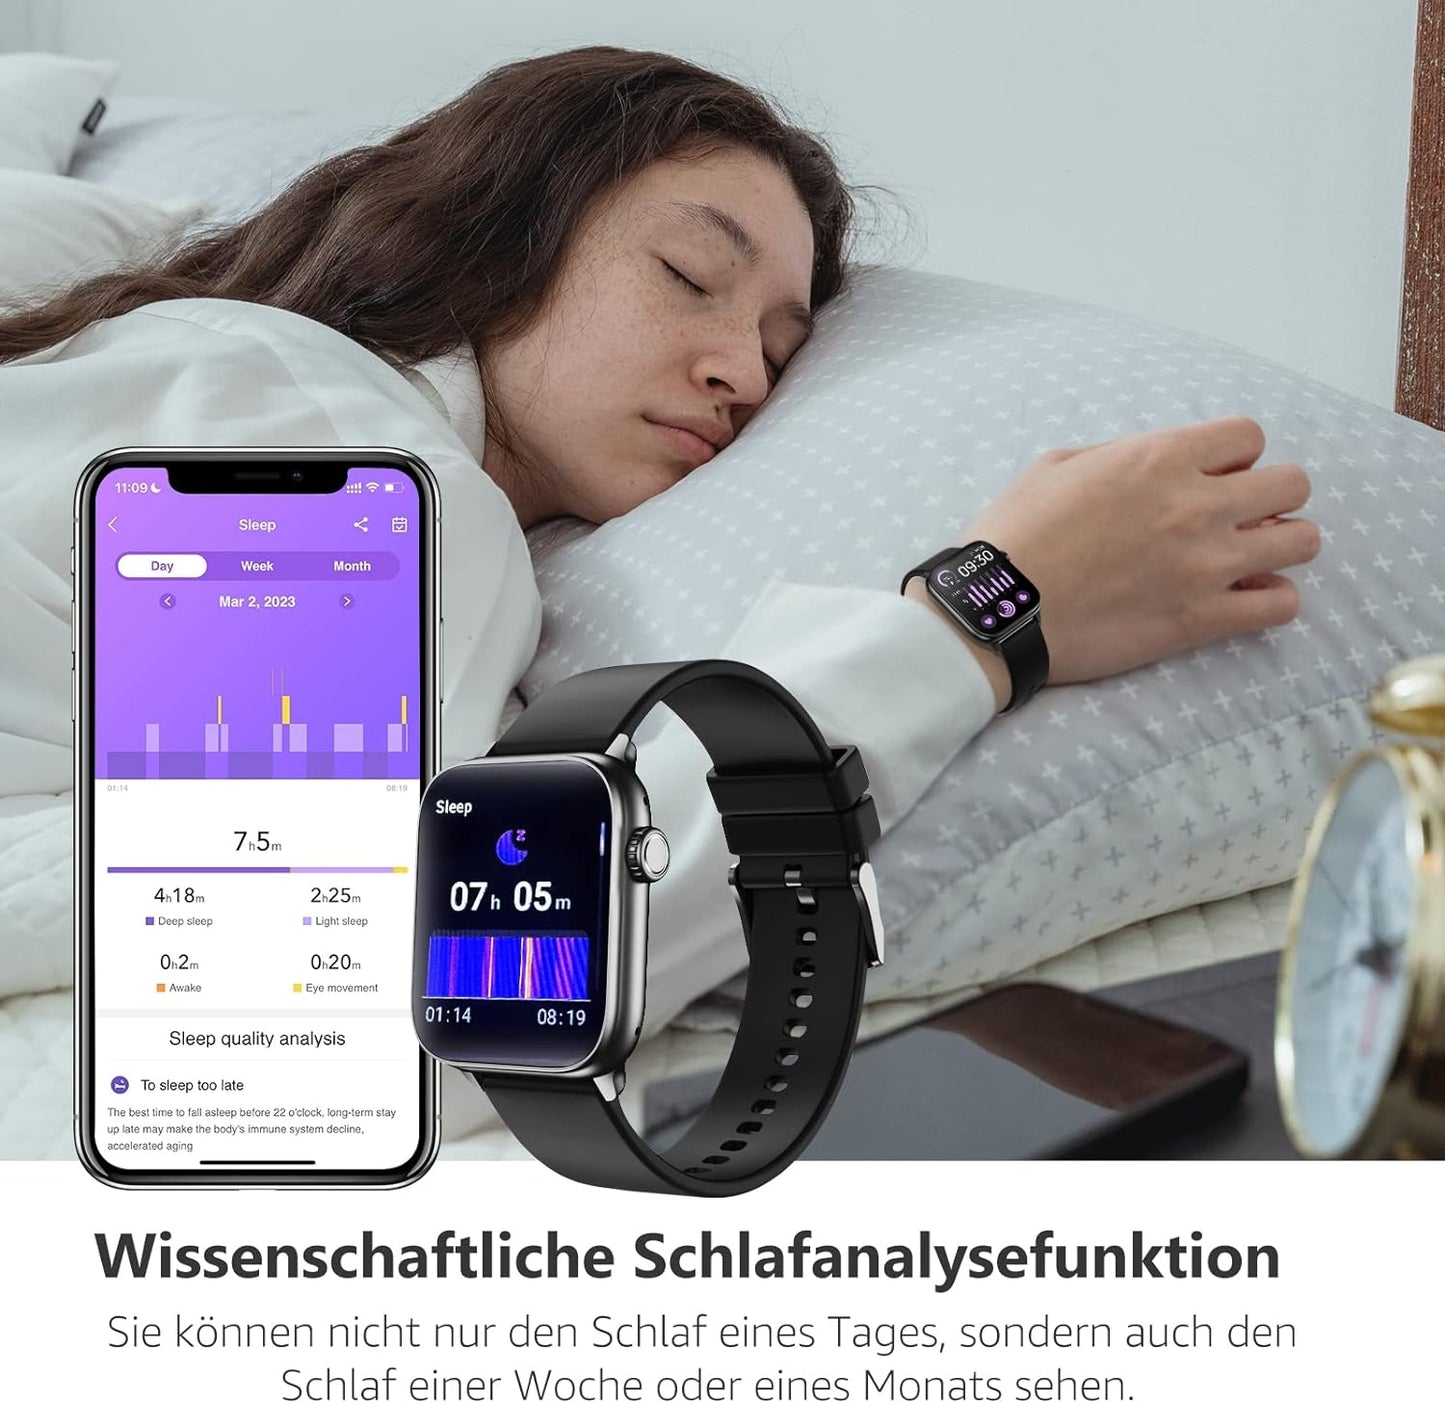 BingoFit Smartwatch Damen Herren, Smart Watch mit Telefonfunktion, 1.83" HD Touchscreen Fitness Tracker, Fitnessuhr mit Herzfrequenz/Schlafmonitor/SpO2, 113 Sportmodi Schrittzähler Uhr für Android iOS